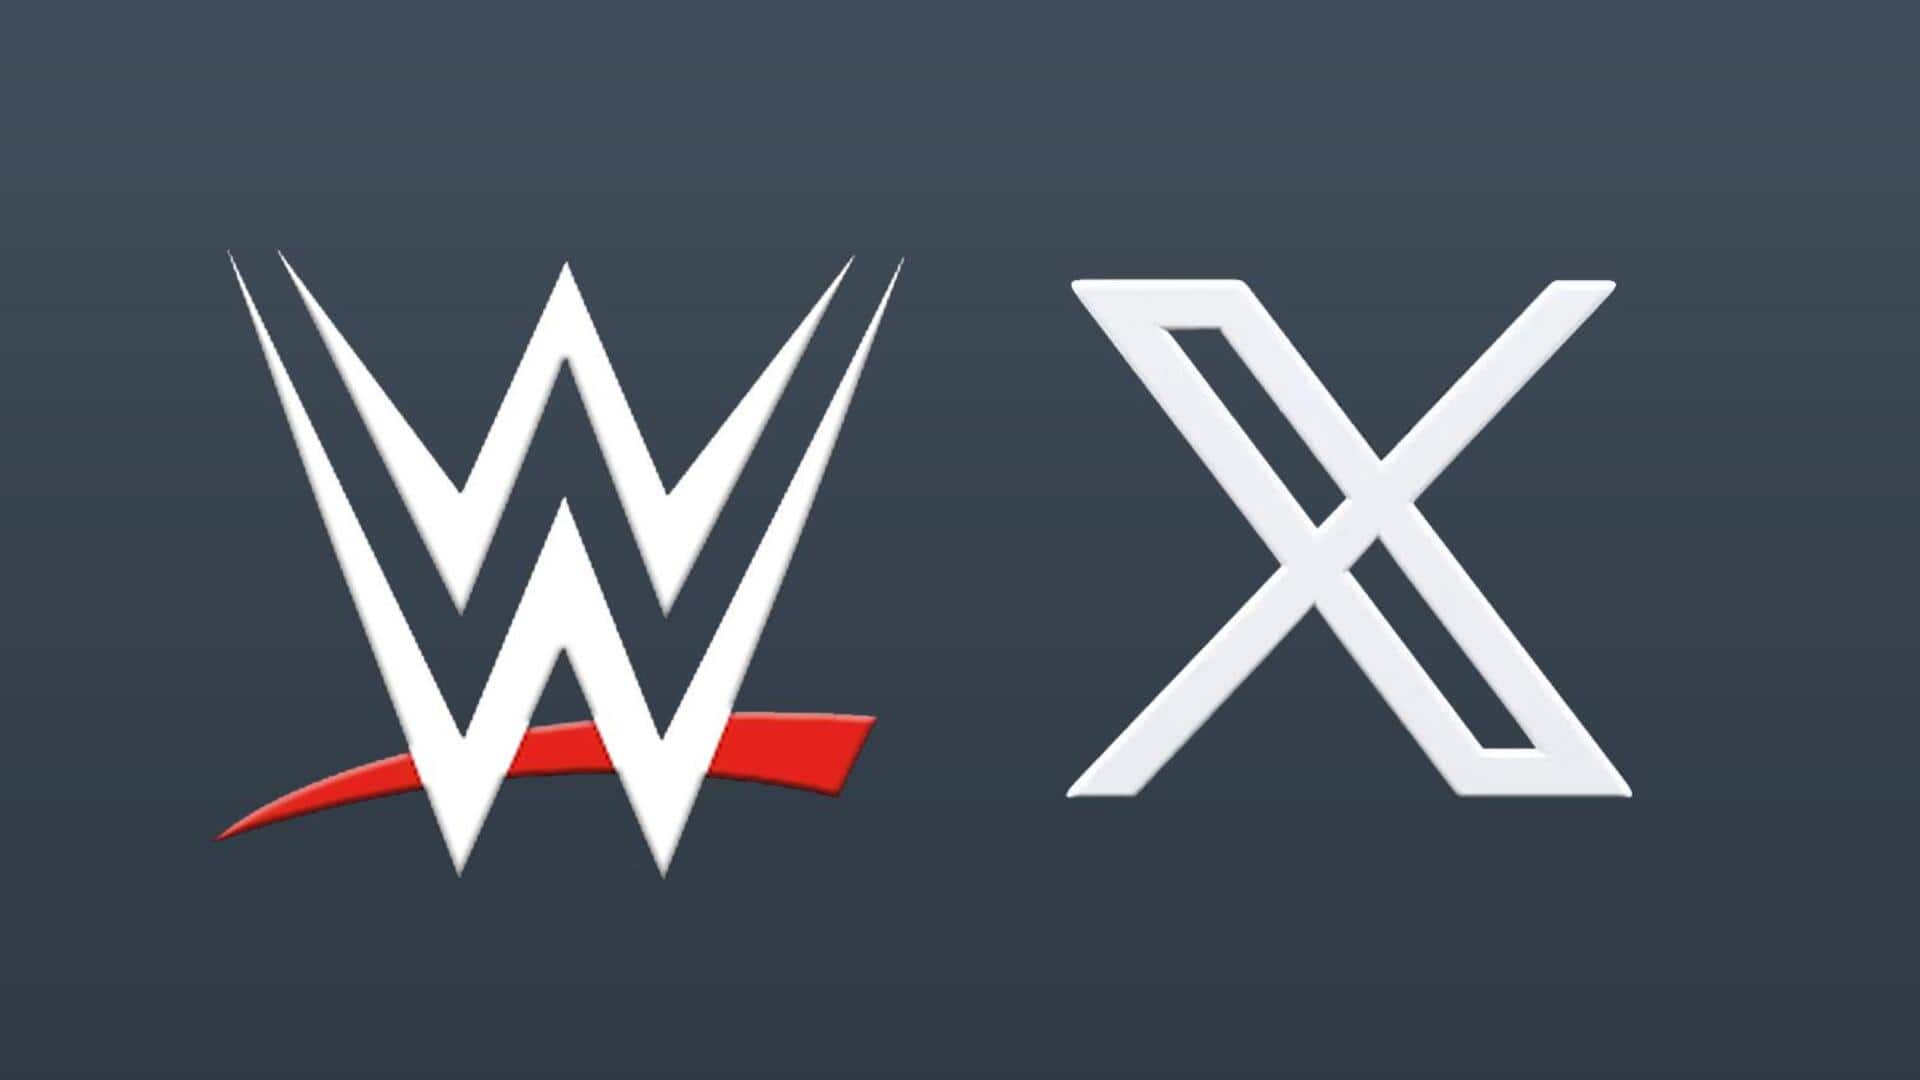 एक्स और WWE के बीच हुई साझेदारी, प्लेटफॉर्म पर देख सकेंगे नए रेसलिंग मैच